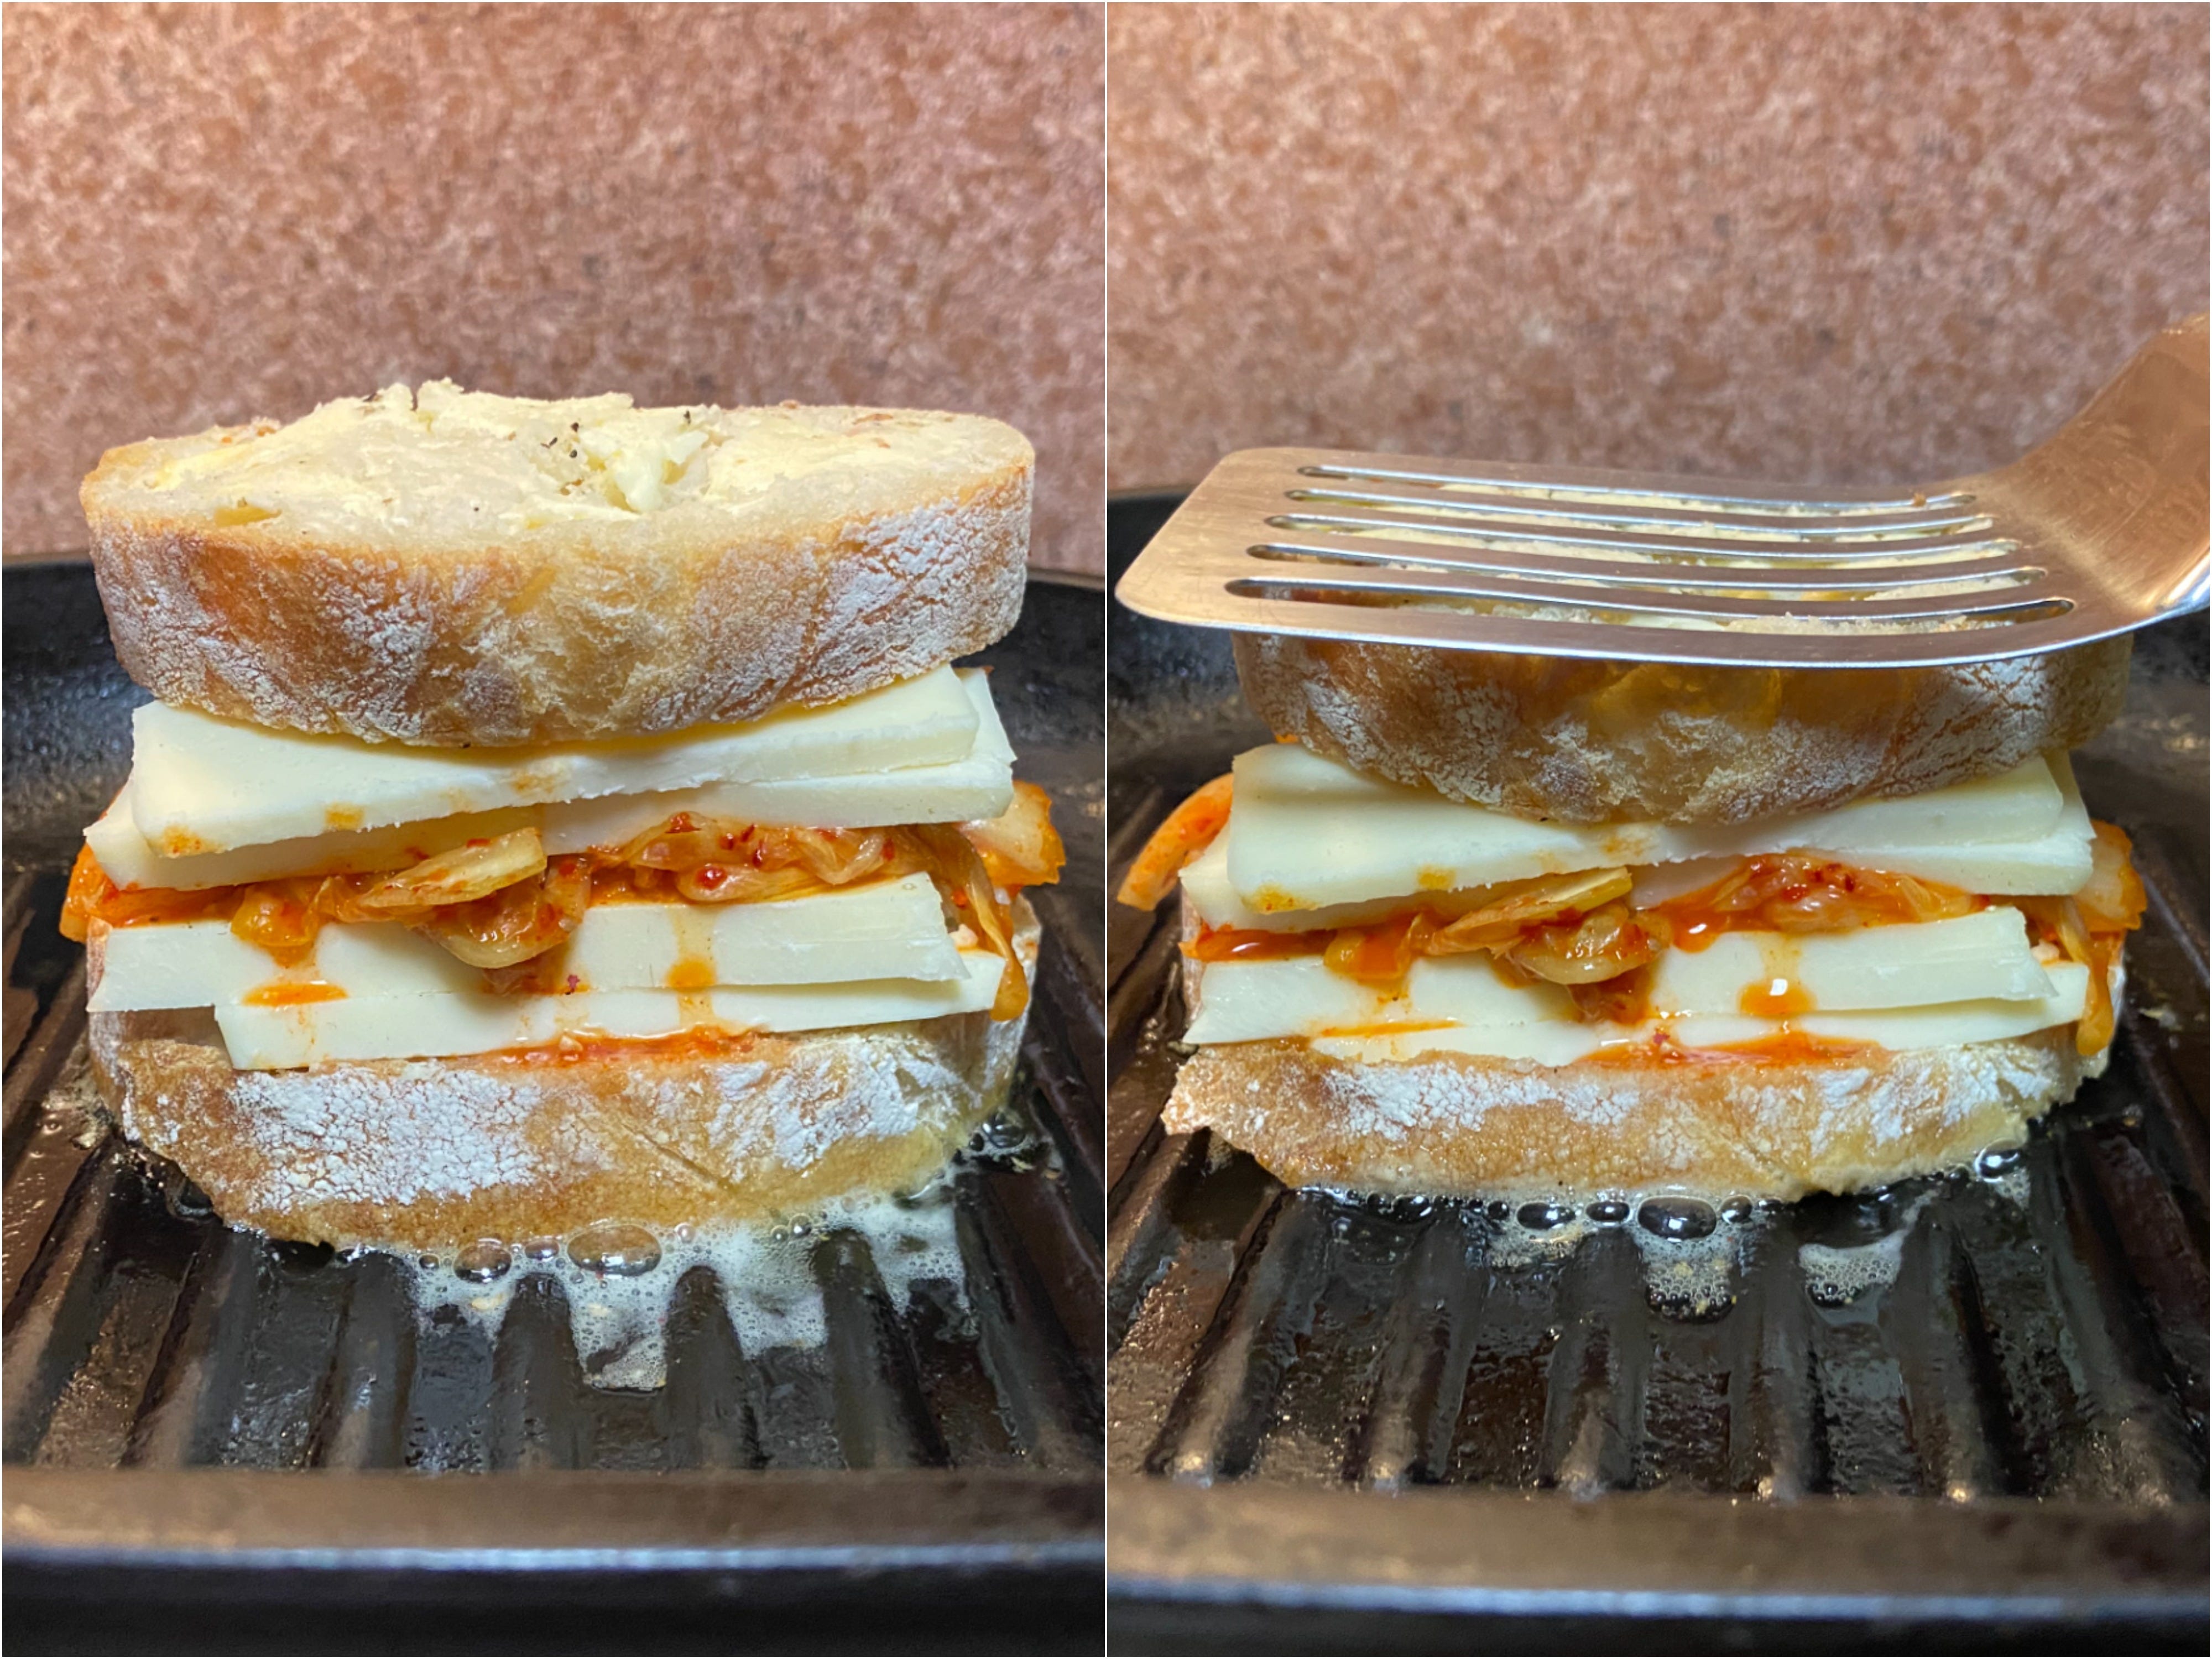 Nebeneinander Fotos des Sandwiches auf einer gusseisernen Pfanne und erneutes Andrücken mit einem Pfannenwender.